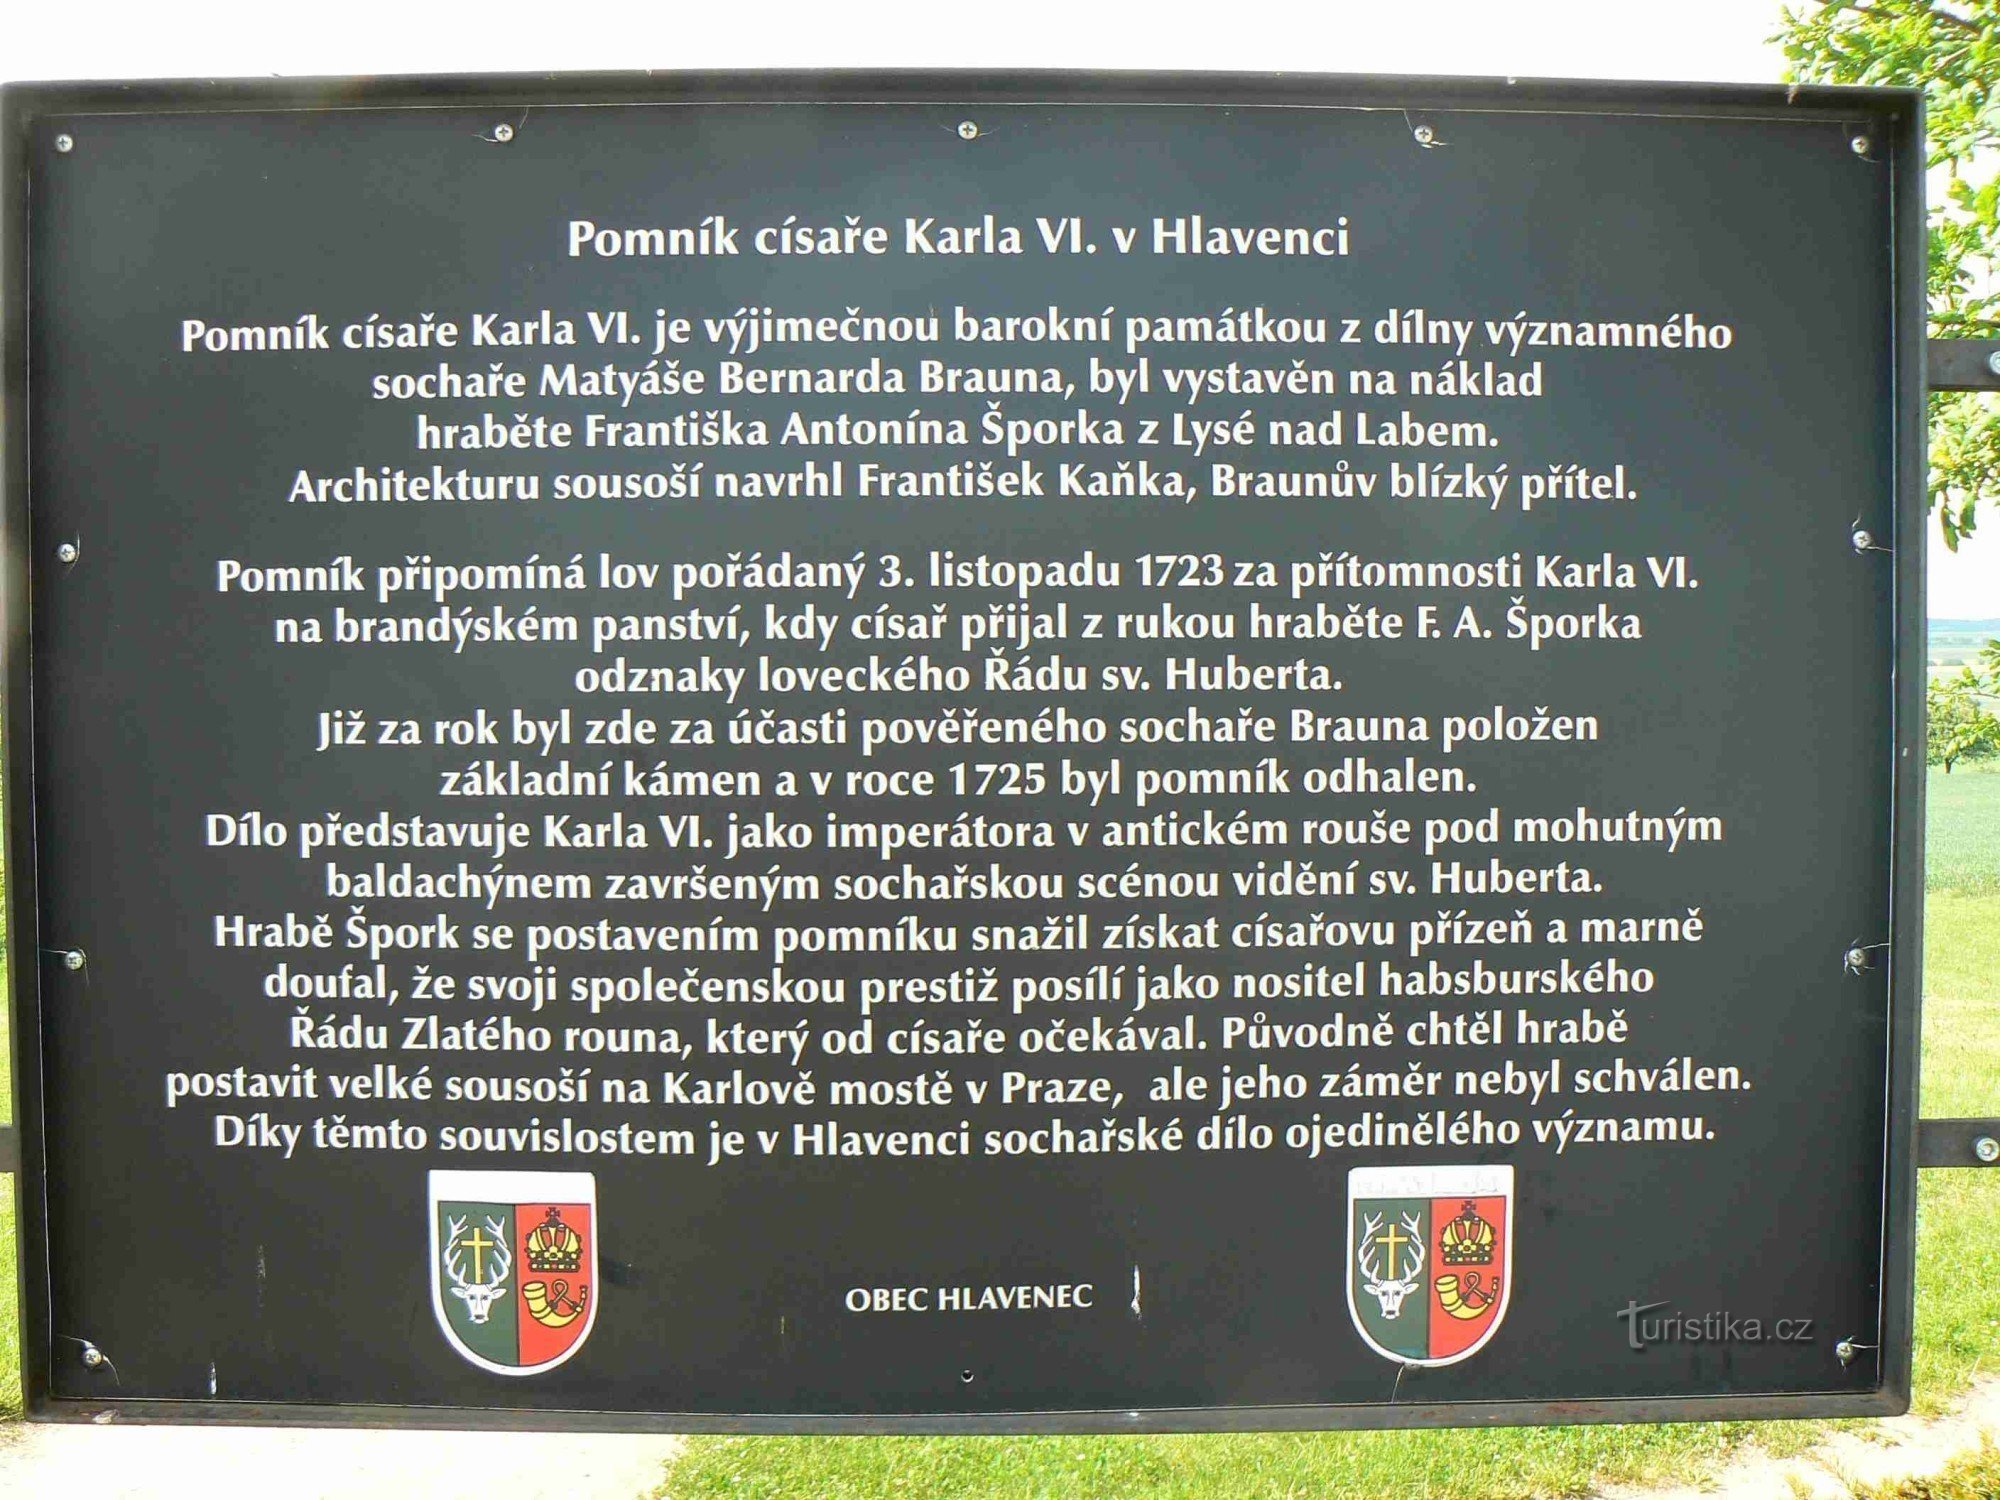 Pomnik cesarza Karola VI.